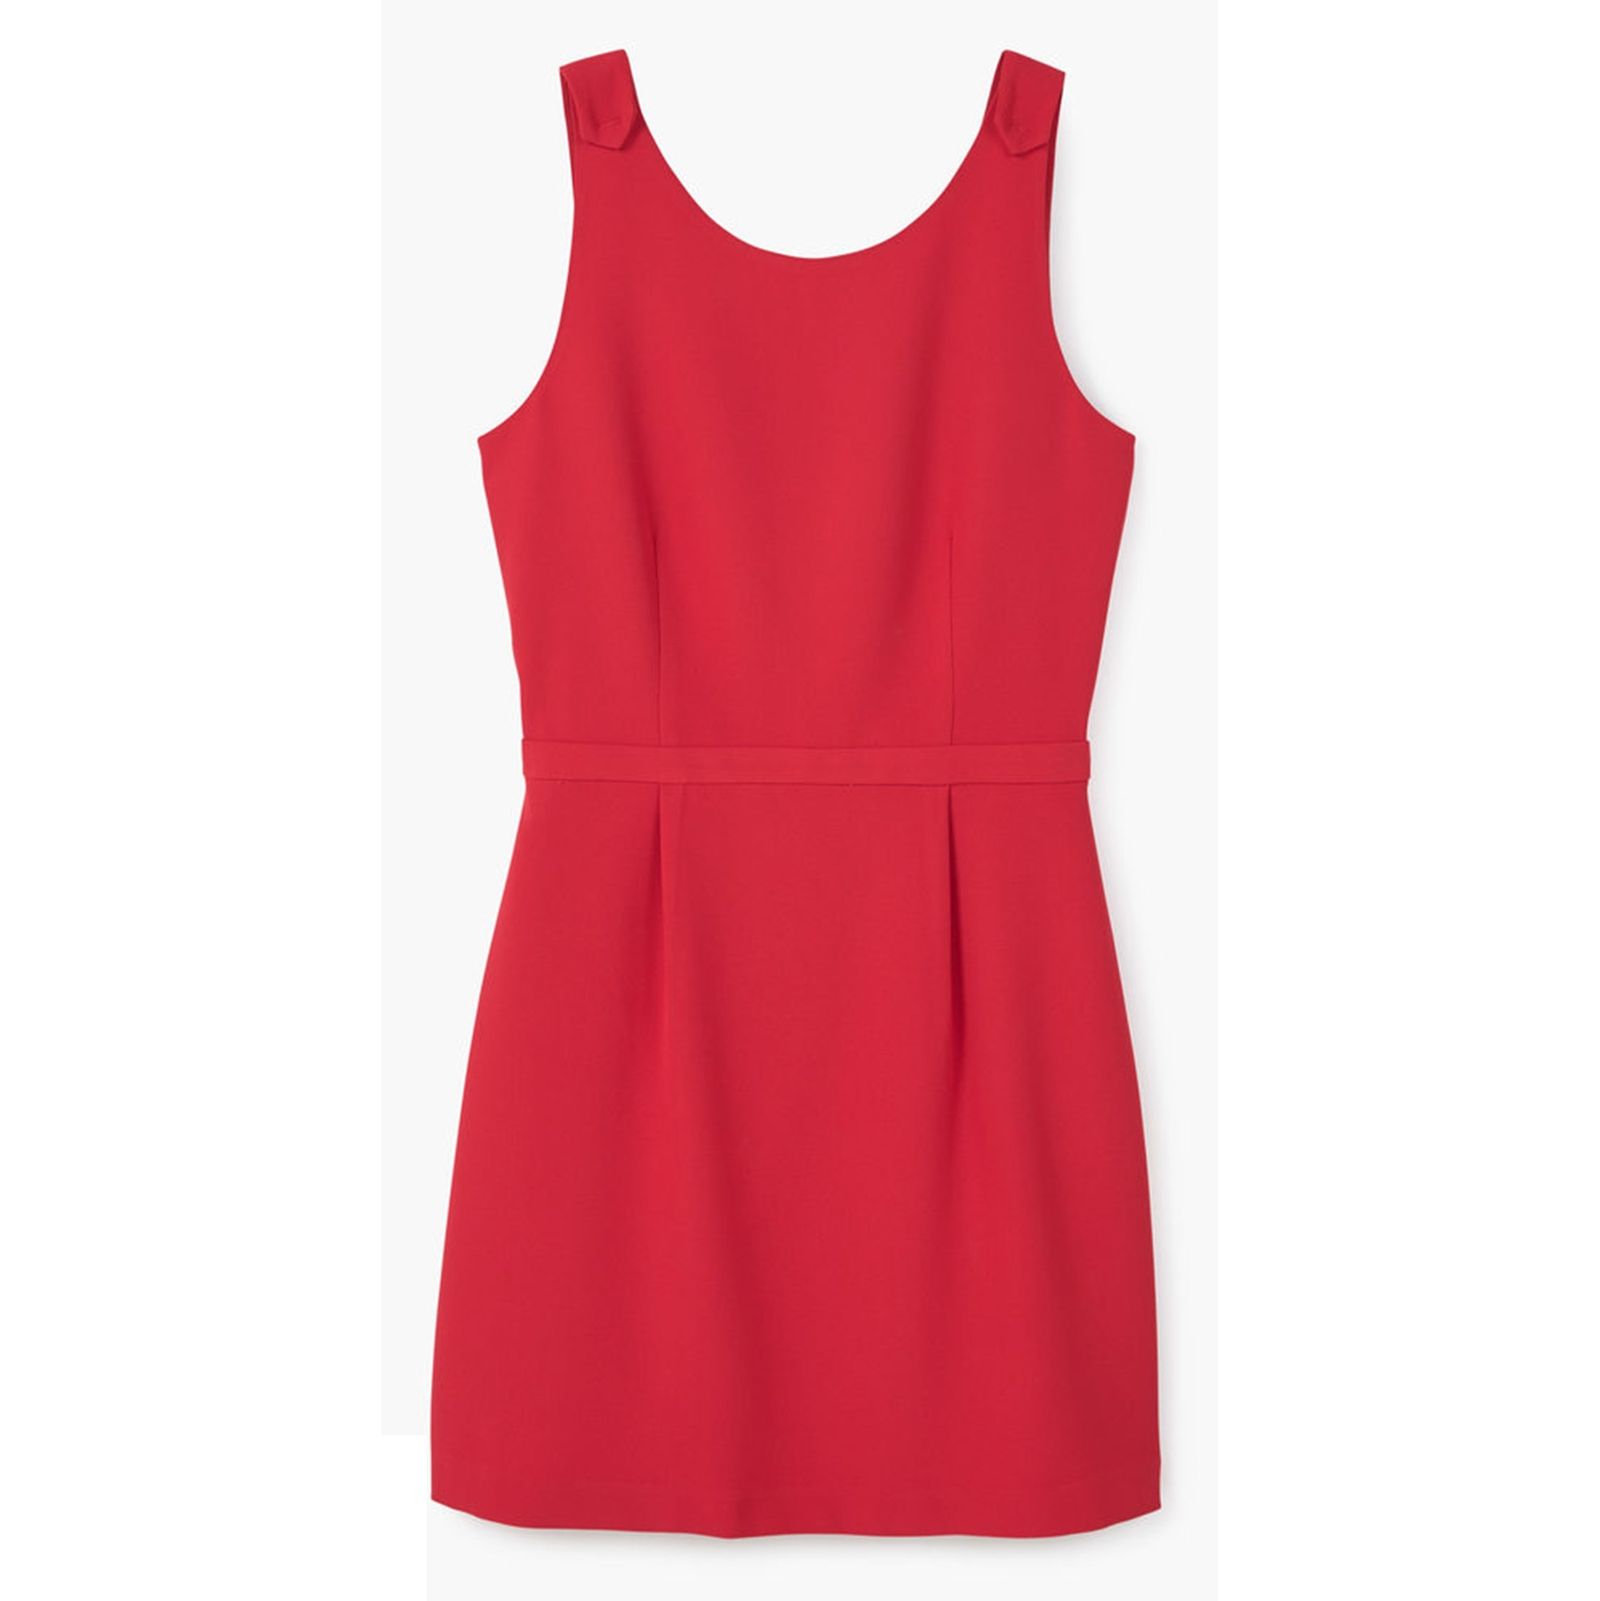 پیراهن کوتاه زنانه - مانگو - قرمز - 1